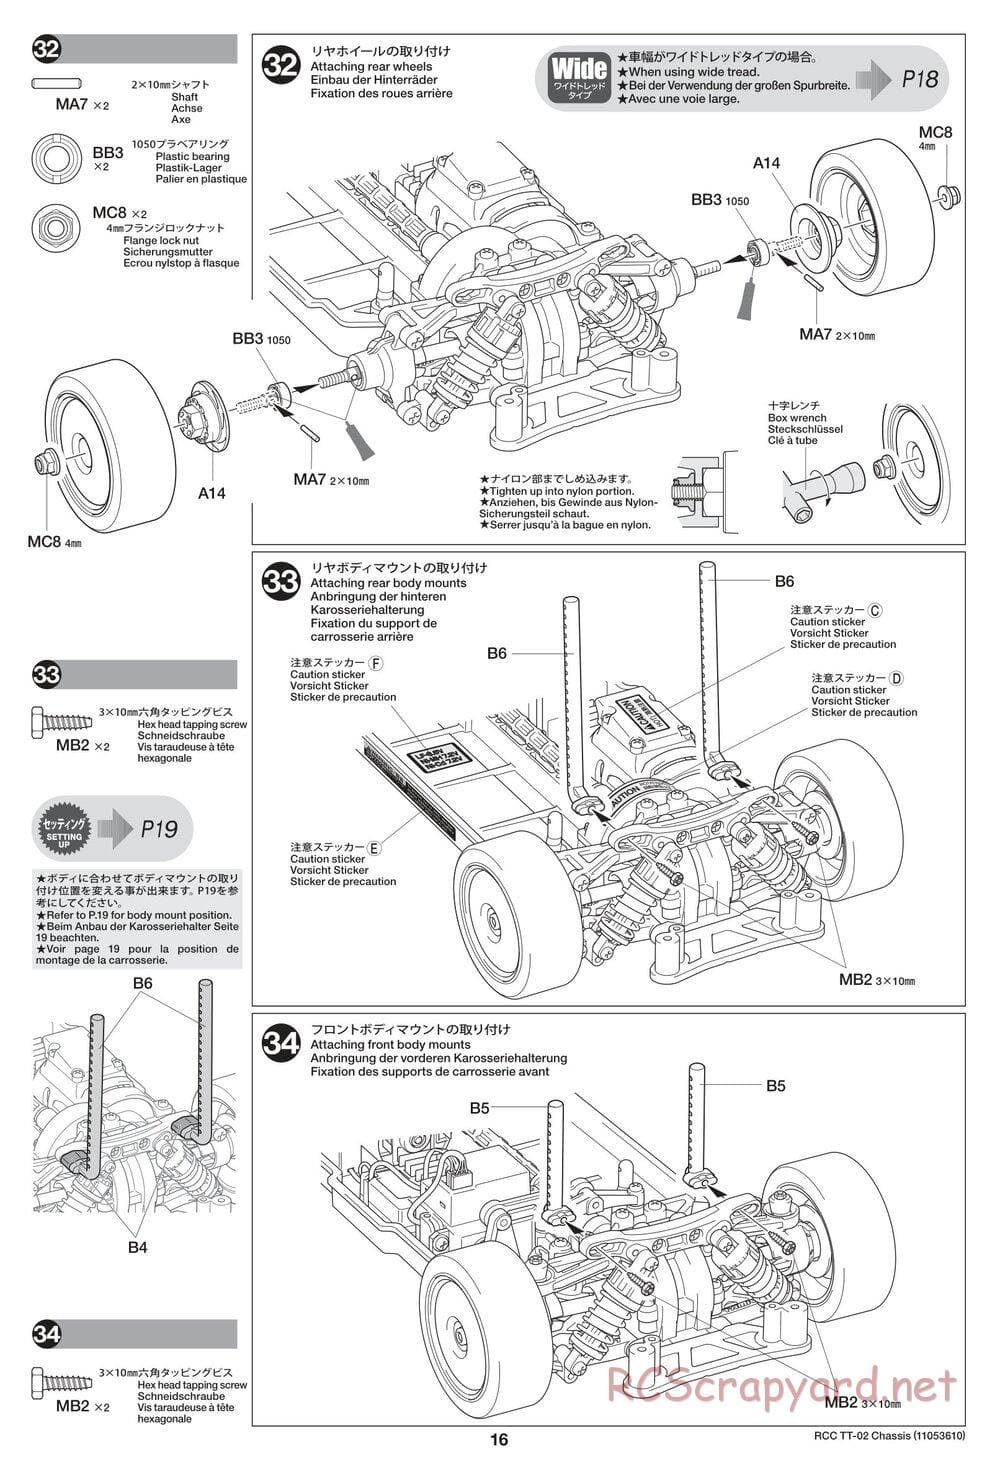 Tamiya - TT-02 Chassis - Manual - Page 16